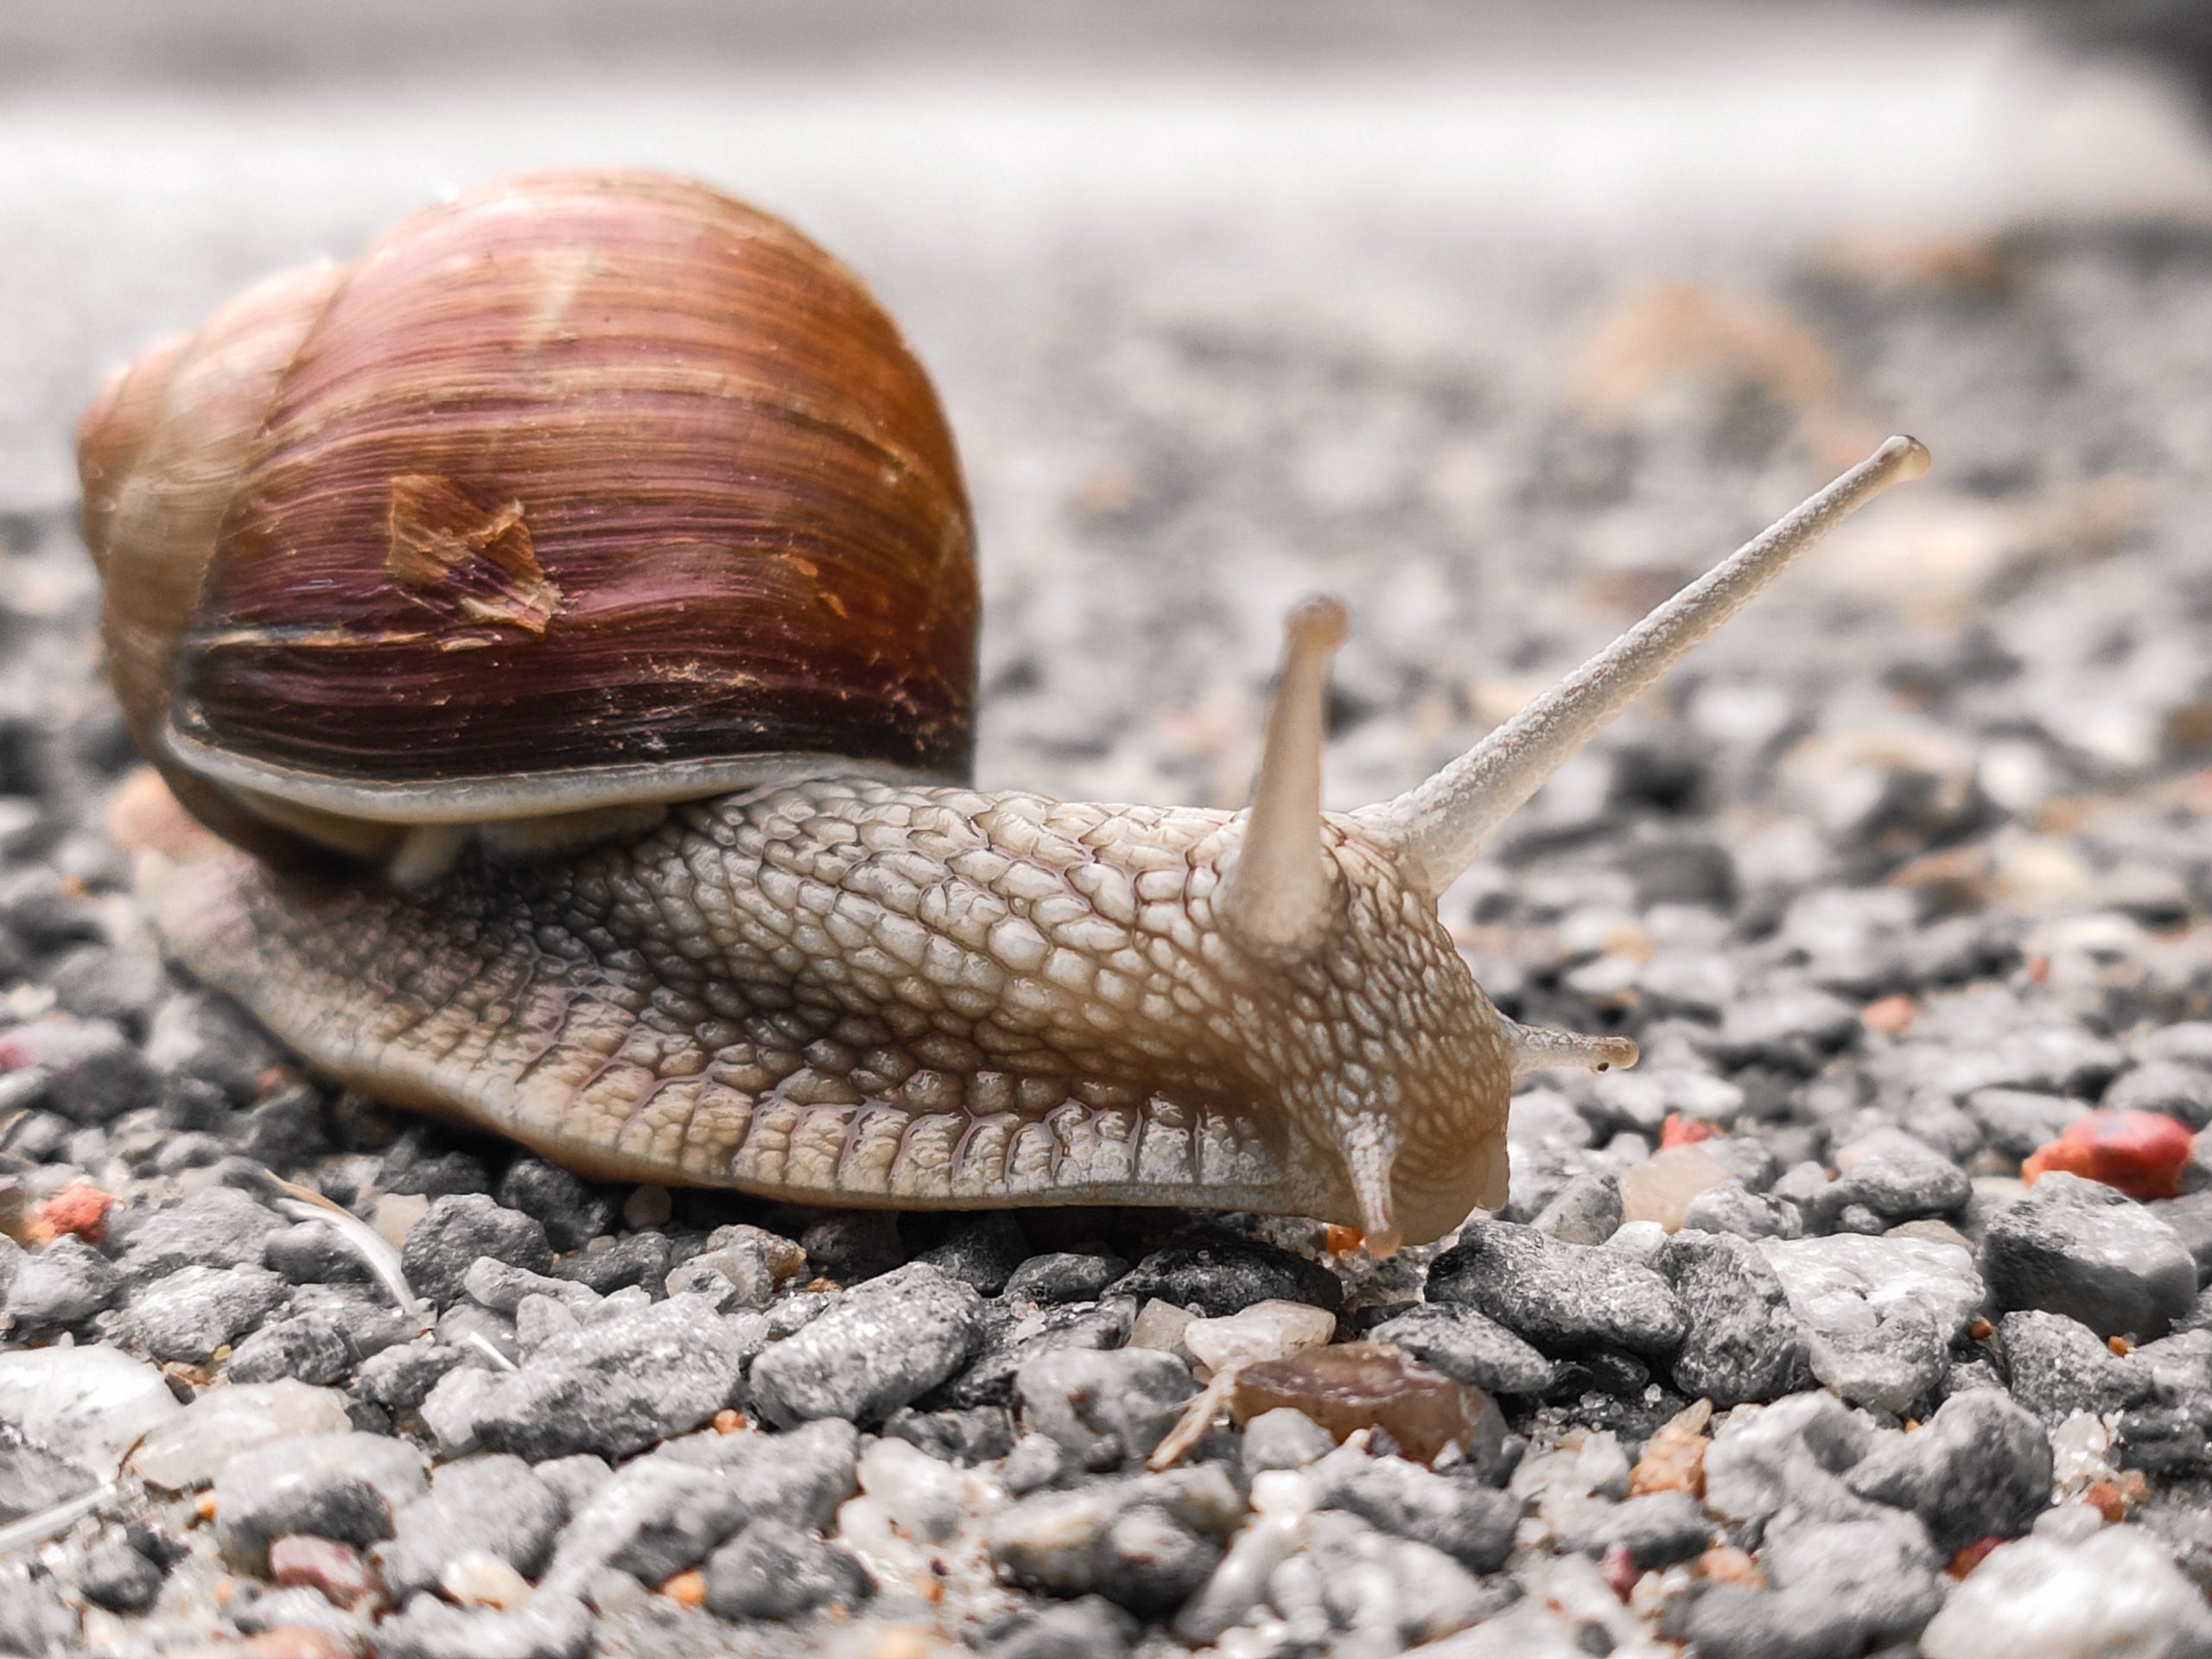 Meningitis-causing giant snails force Florida county into quarantine